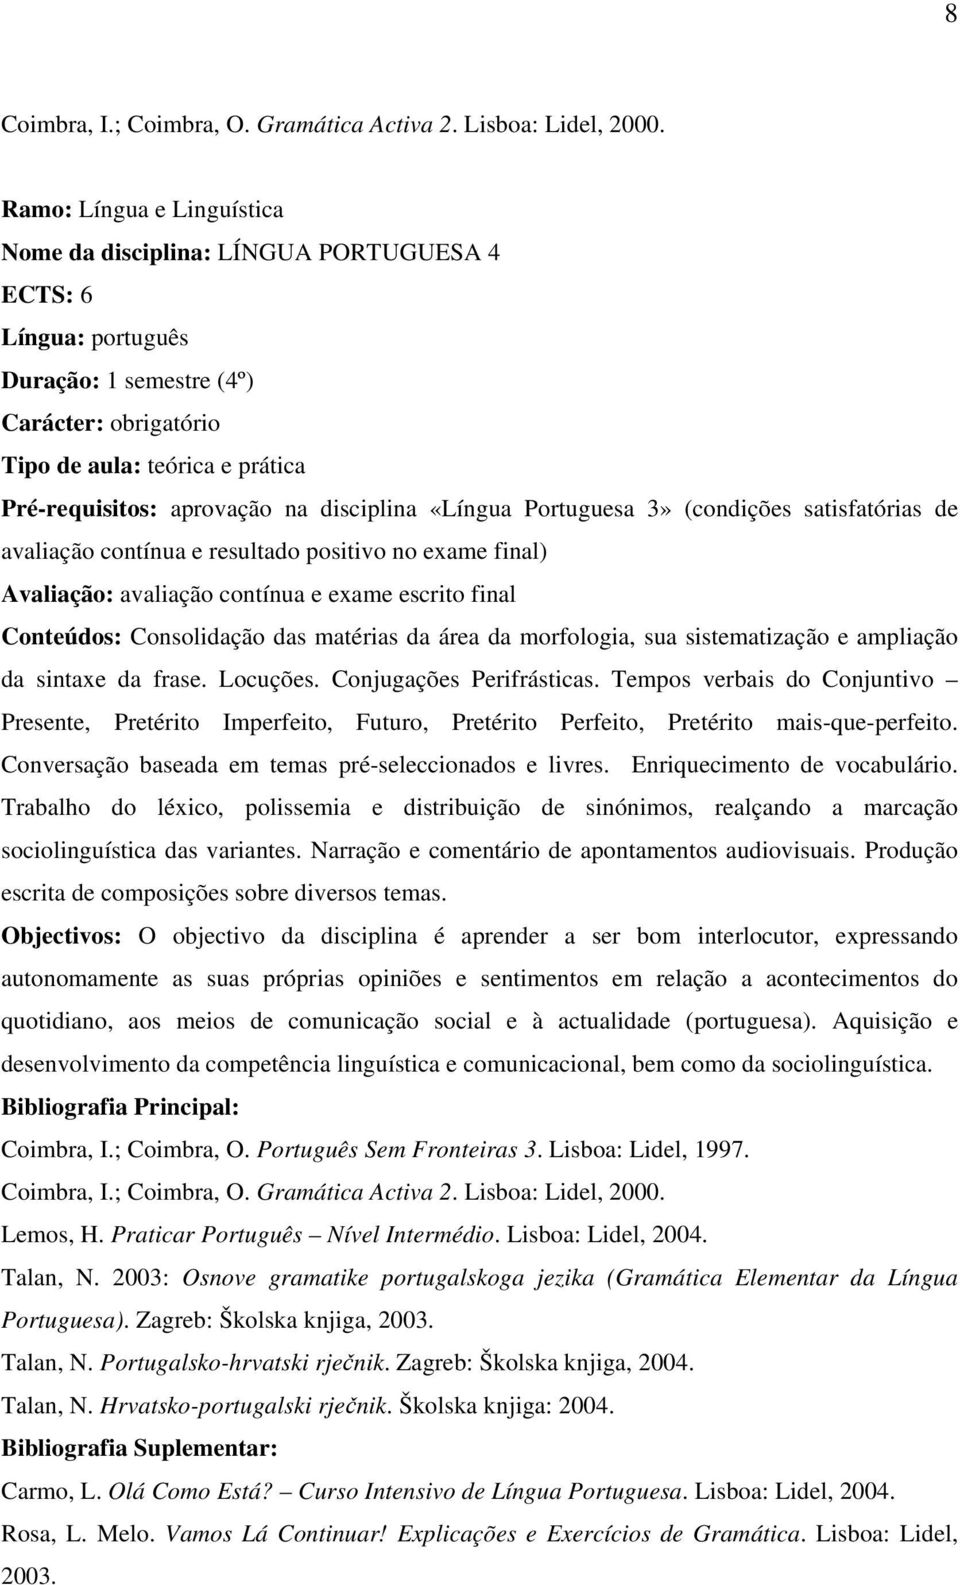 na disciplina «Língua Portuguesa 3» (condições satisfatórias de avaliação contínua e resultado positivo no exame final) Avaliação: avaliação contínua e exame escrito final Conteúdos: Consolidação das